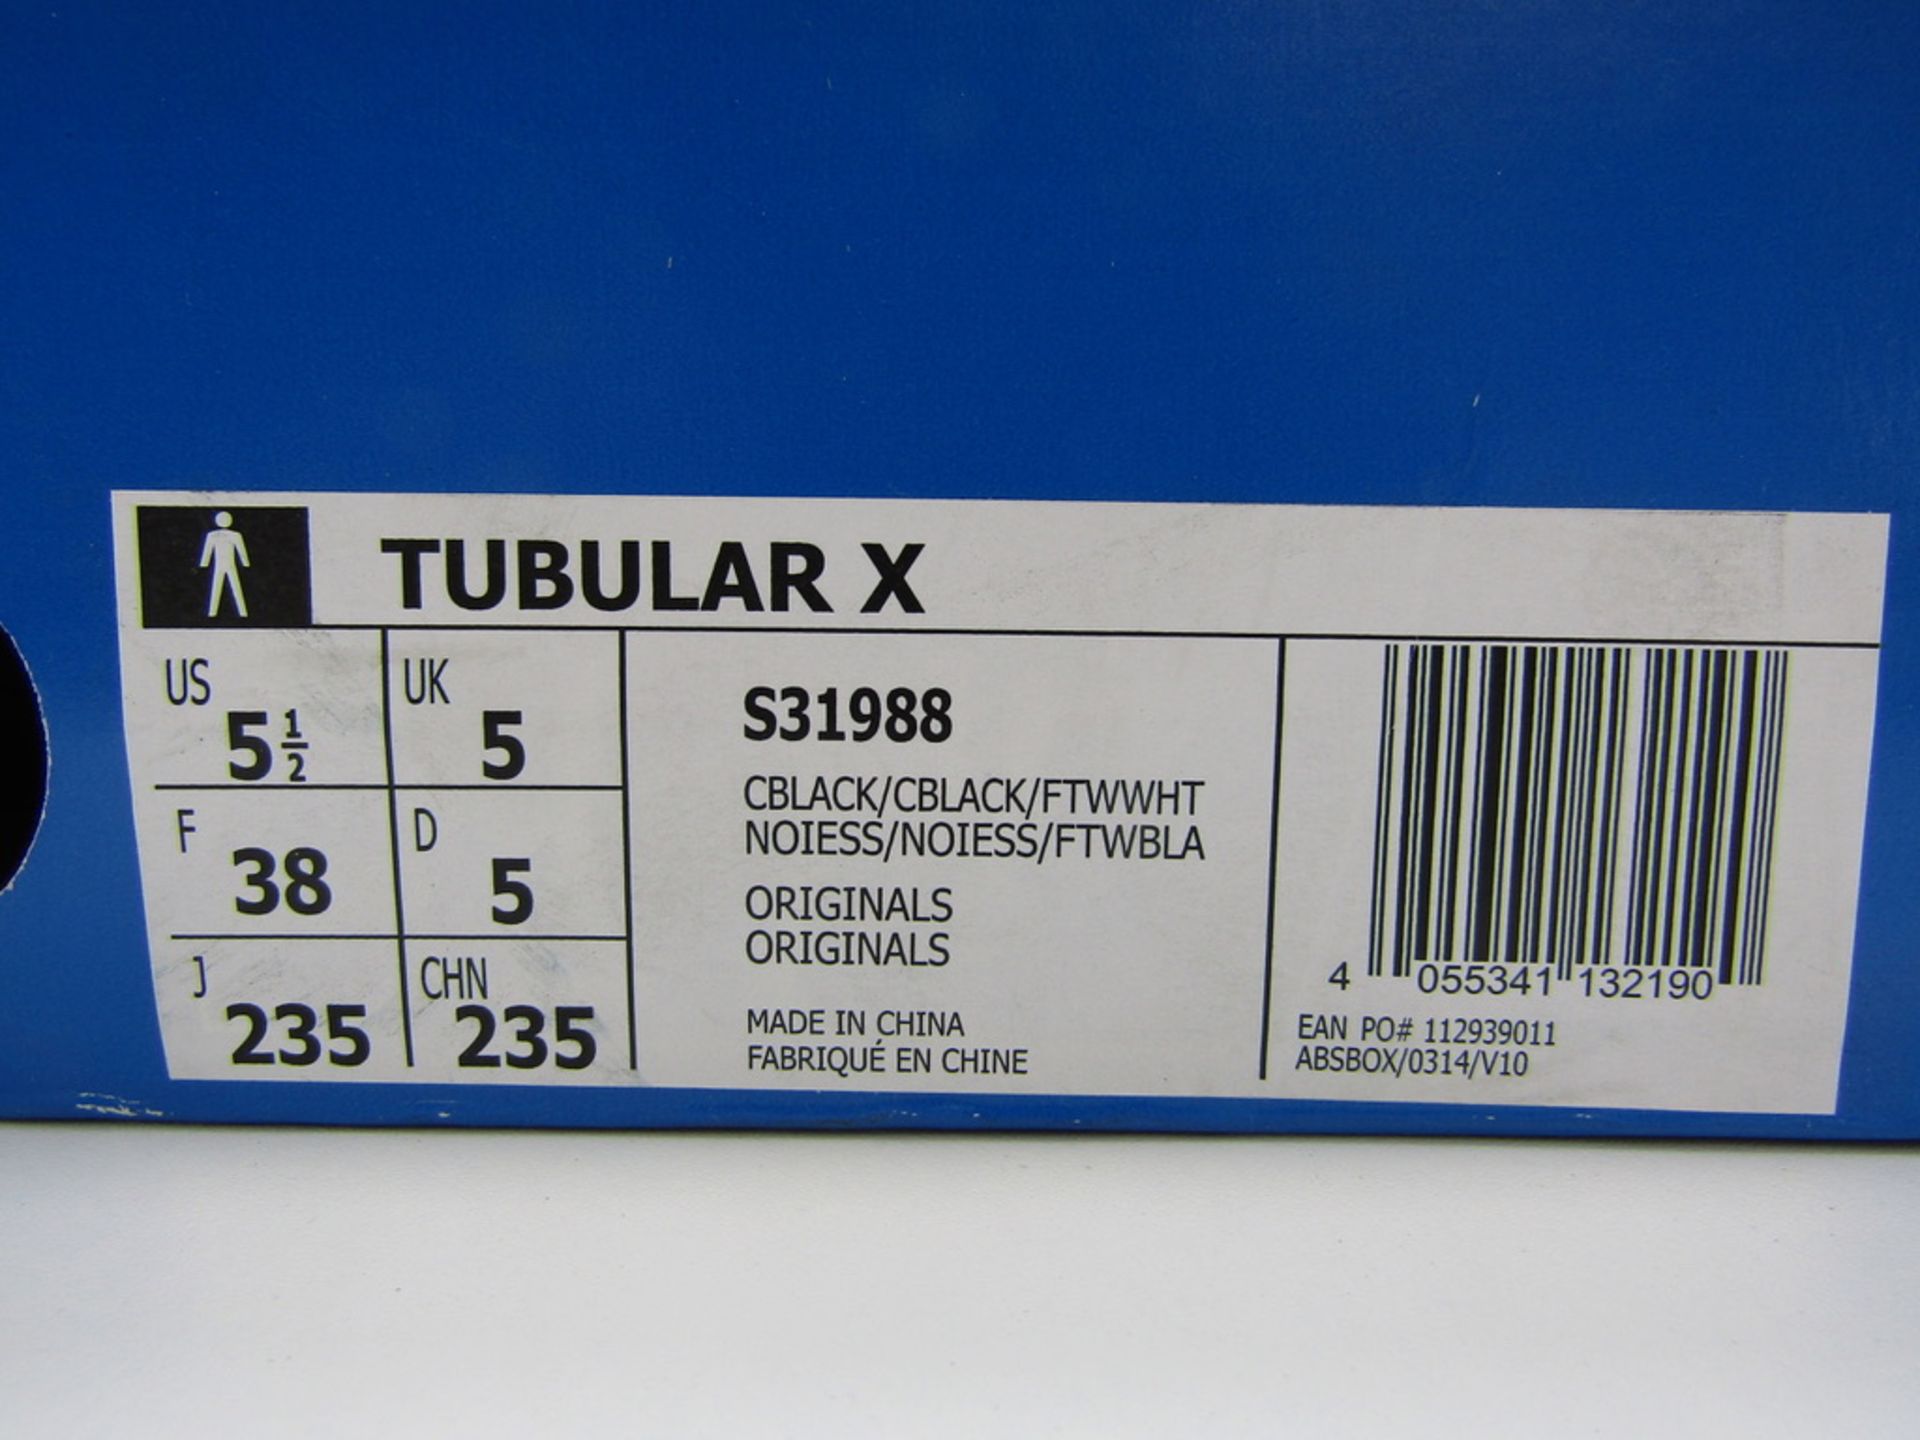 1 Pair of Adidas Tubular X Trainers. UK size 5. - Image 5 of 6